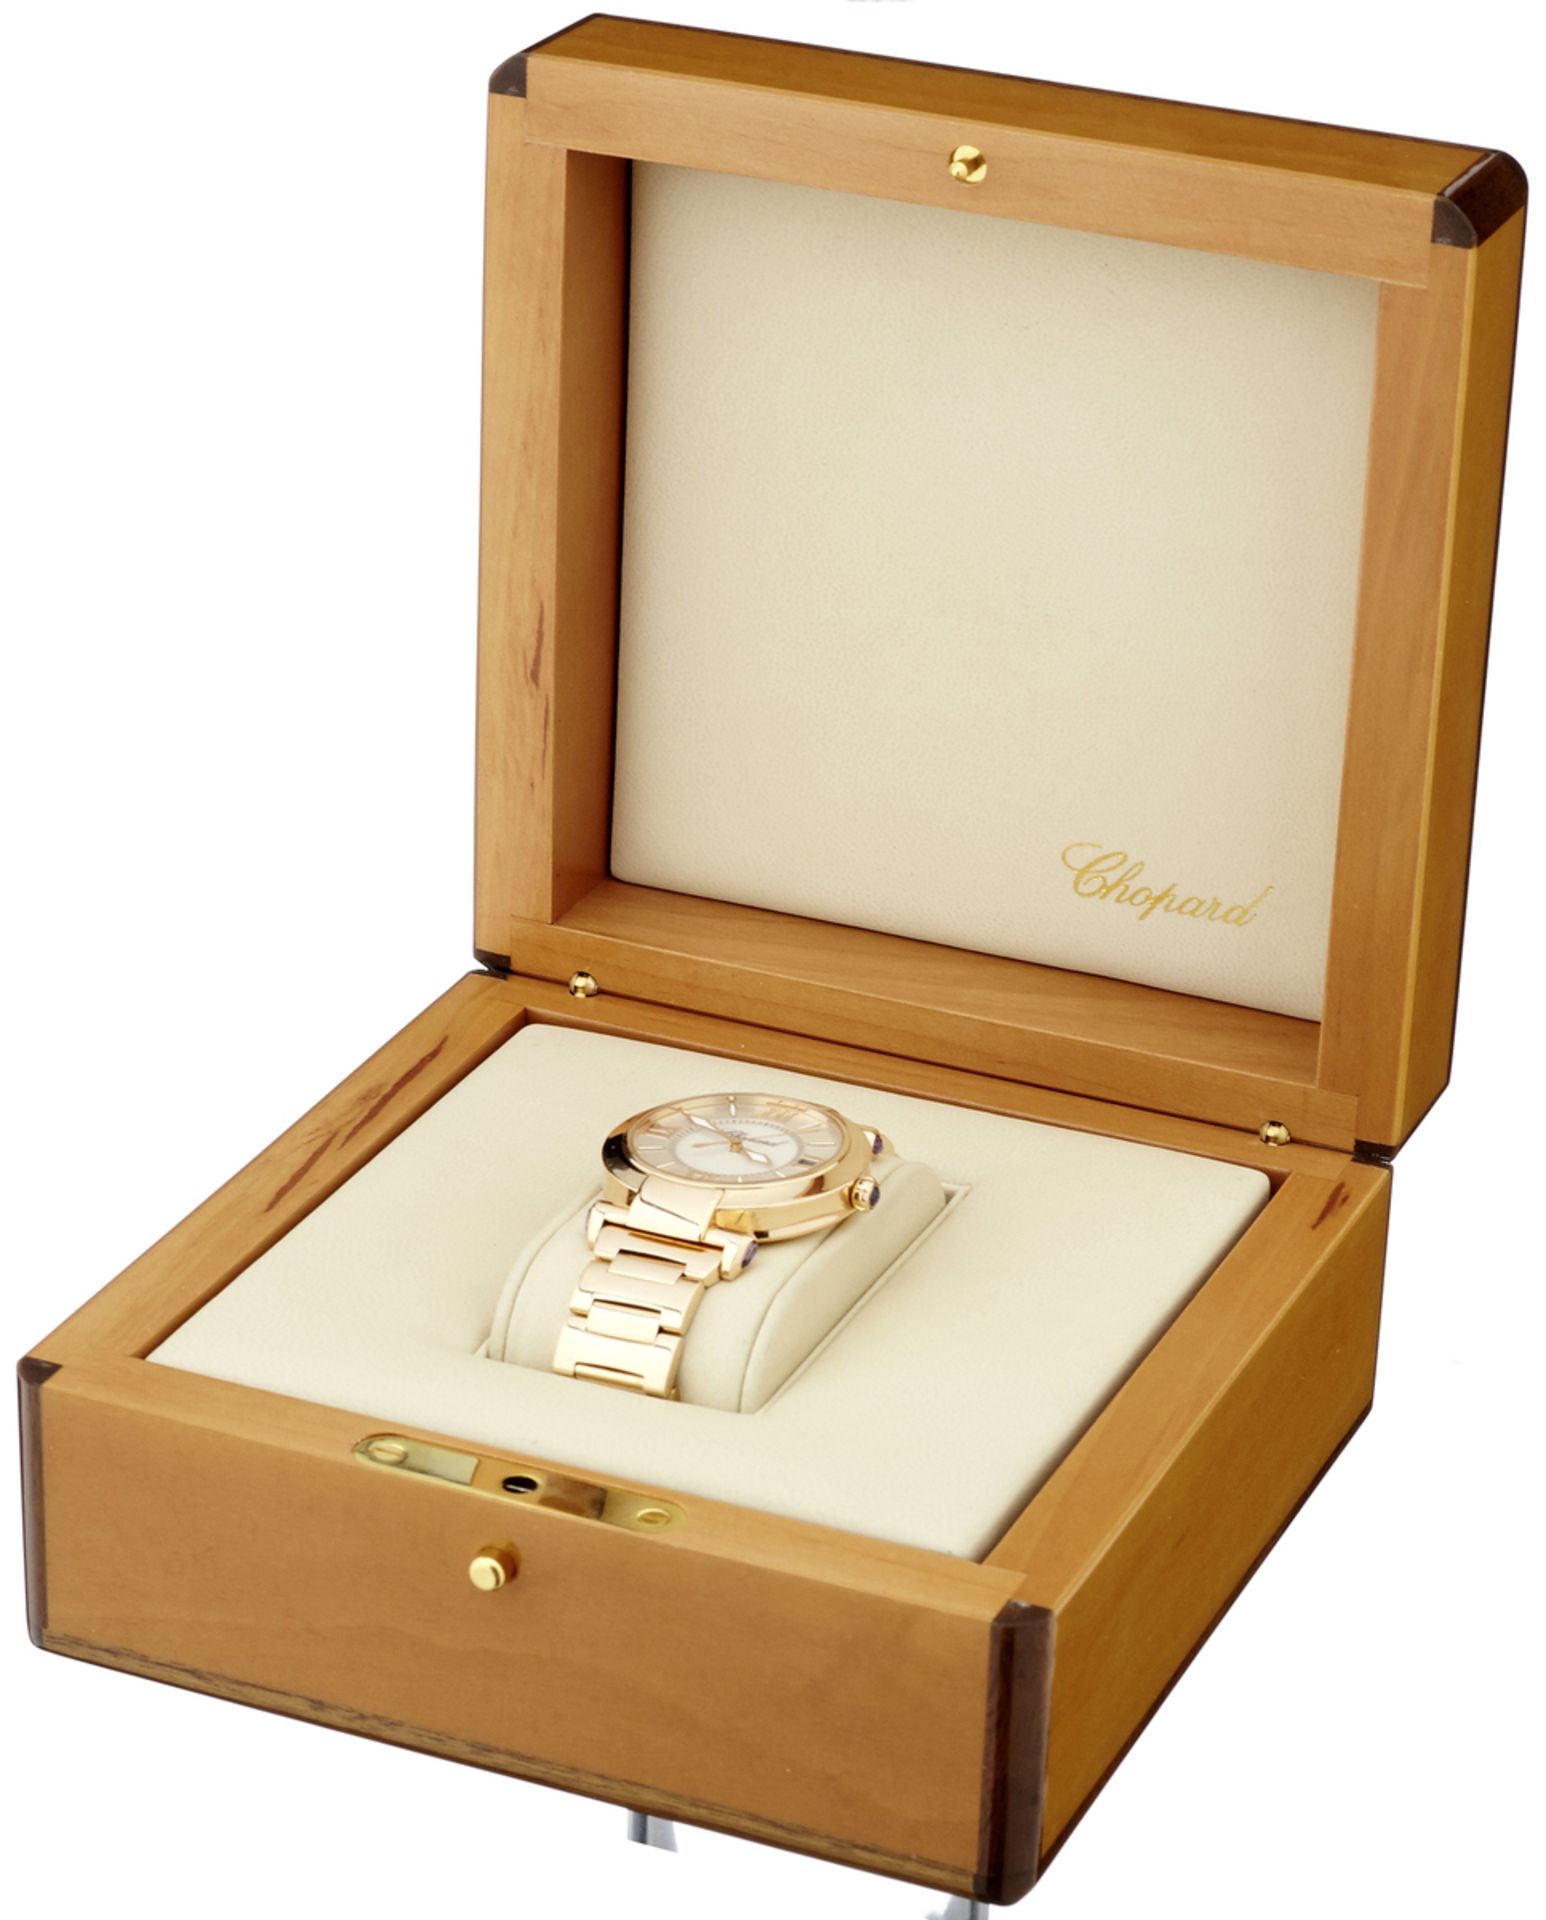 Gold-Armbanduhr "Chopard""Chopard Impériale". Signiertes Gehäuse und originales Gliederarmband aus - Bild 4 aus 4